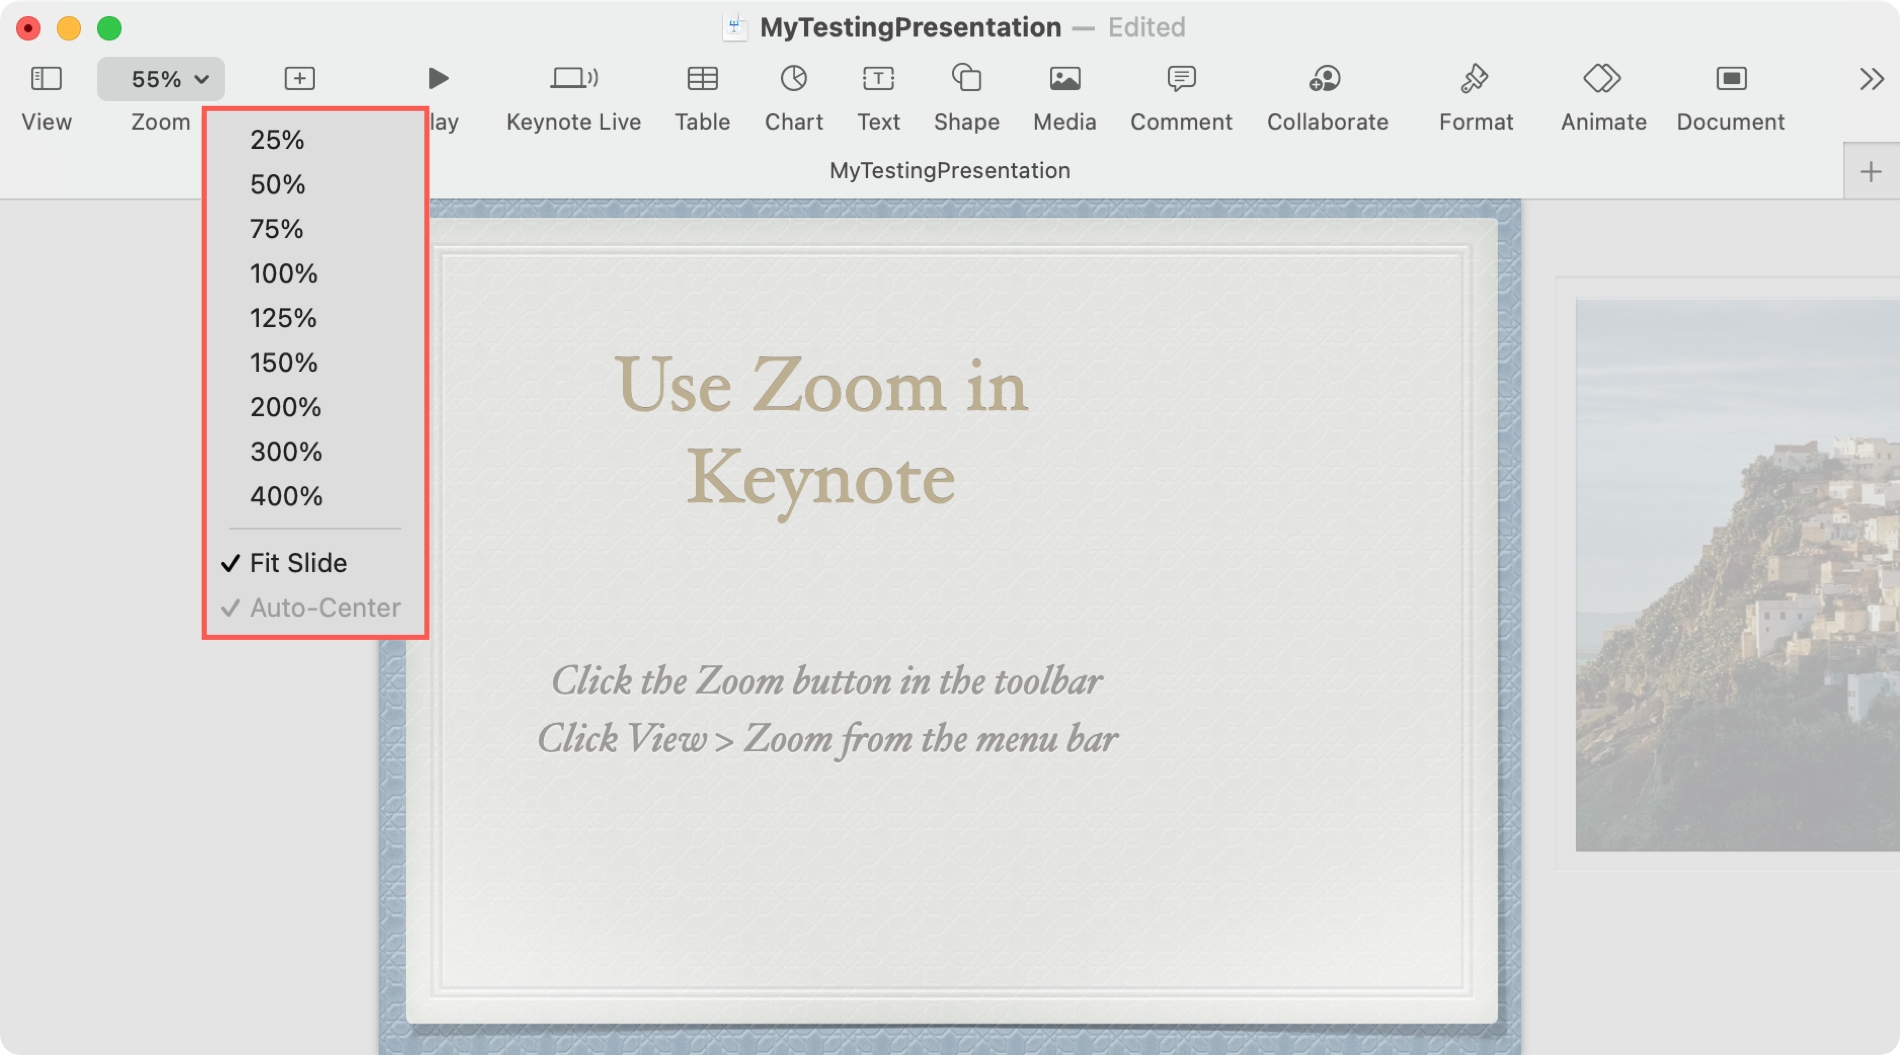 Keynote Zoom to Fit Slide on Mac